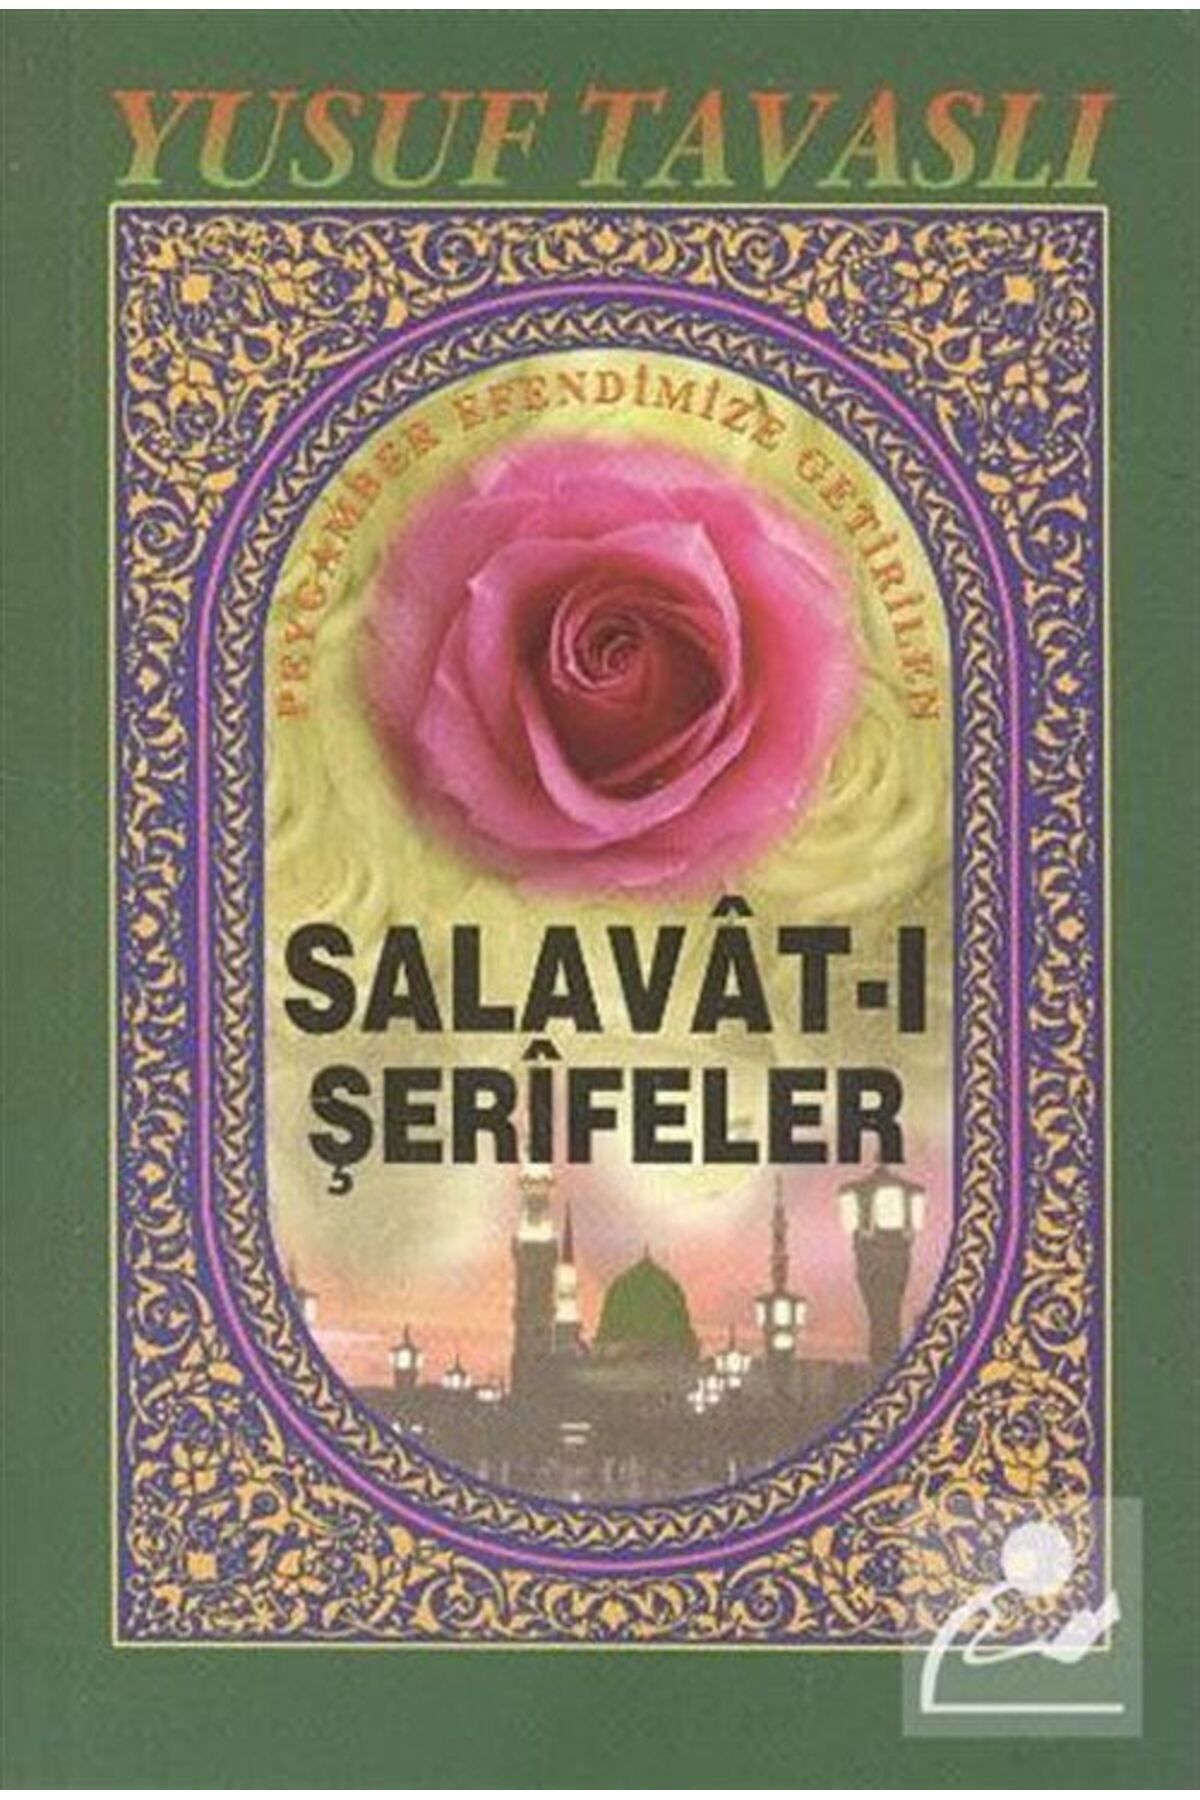 Tavaslı Yayınları Salavat-ı Şerifeler (CEP BOY) (KOD: C33)